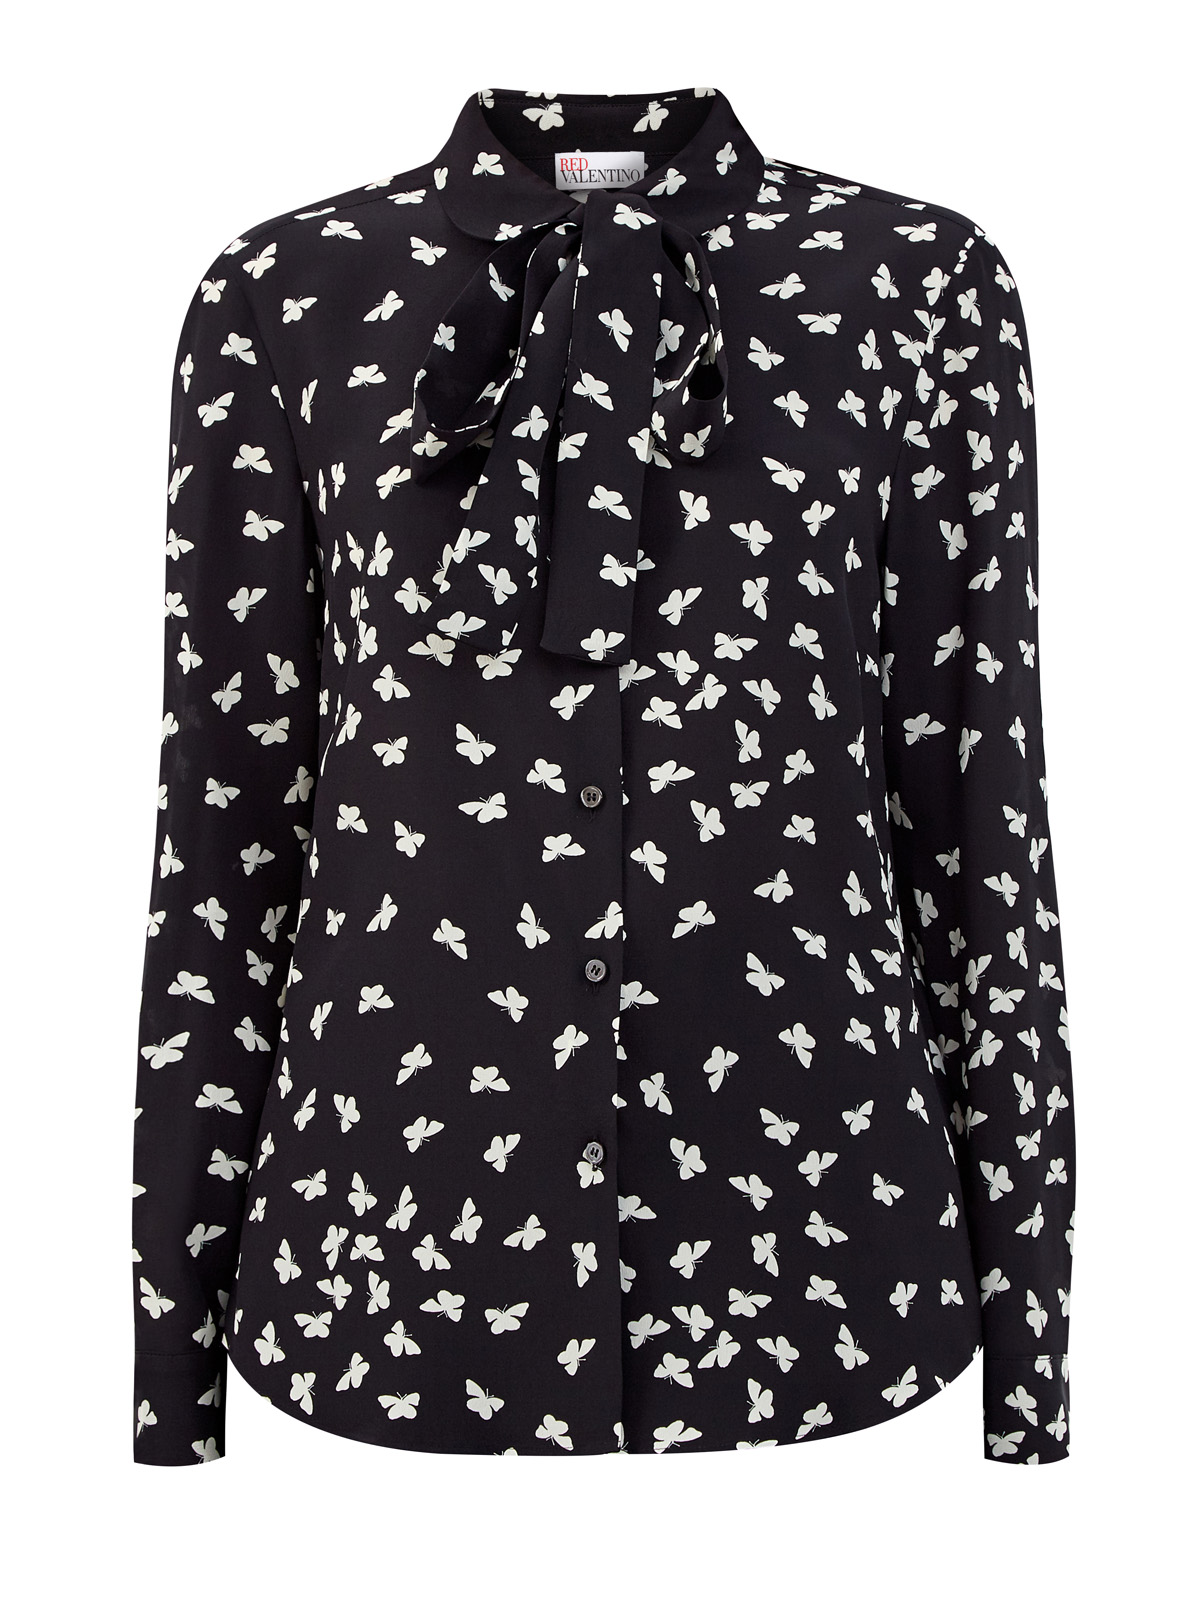 Шелковая блуза с принтом «Тысяча бабочек» REDVALENTINO, цвет мульти, размер M;XL;S - фото 1